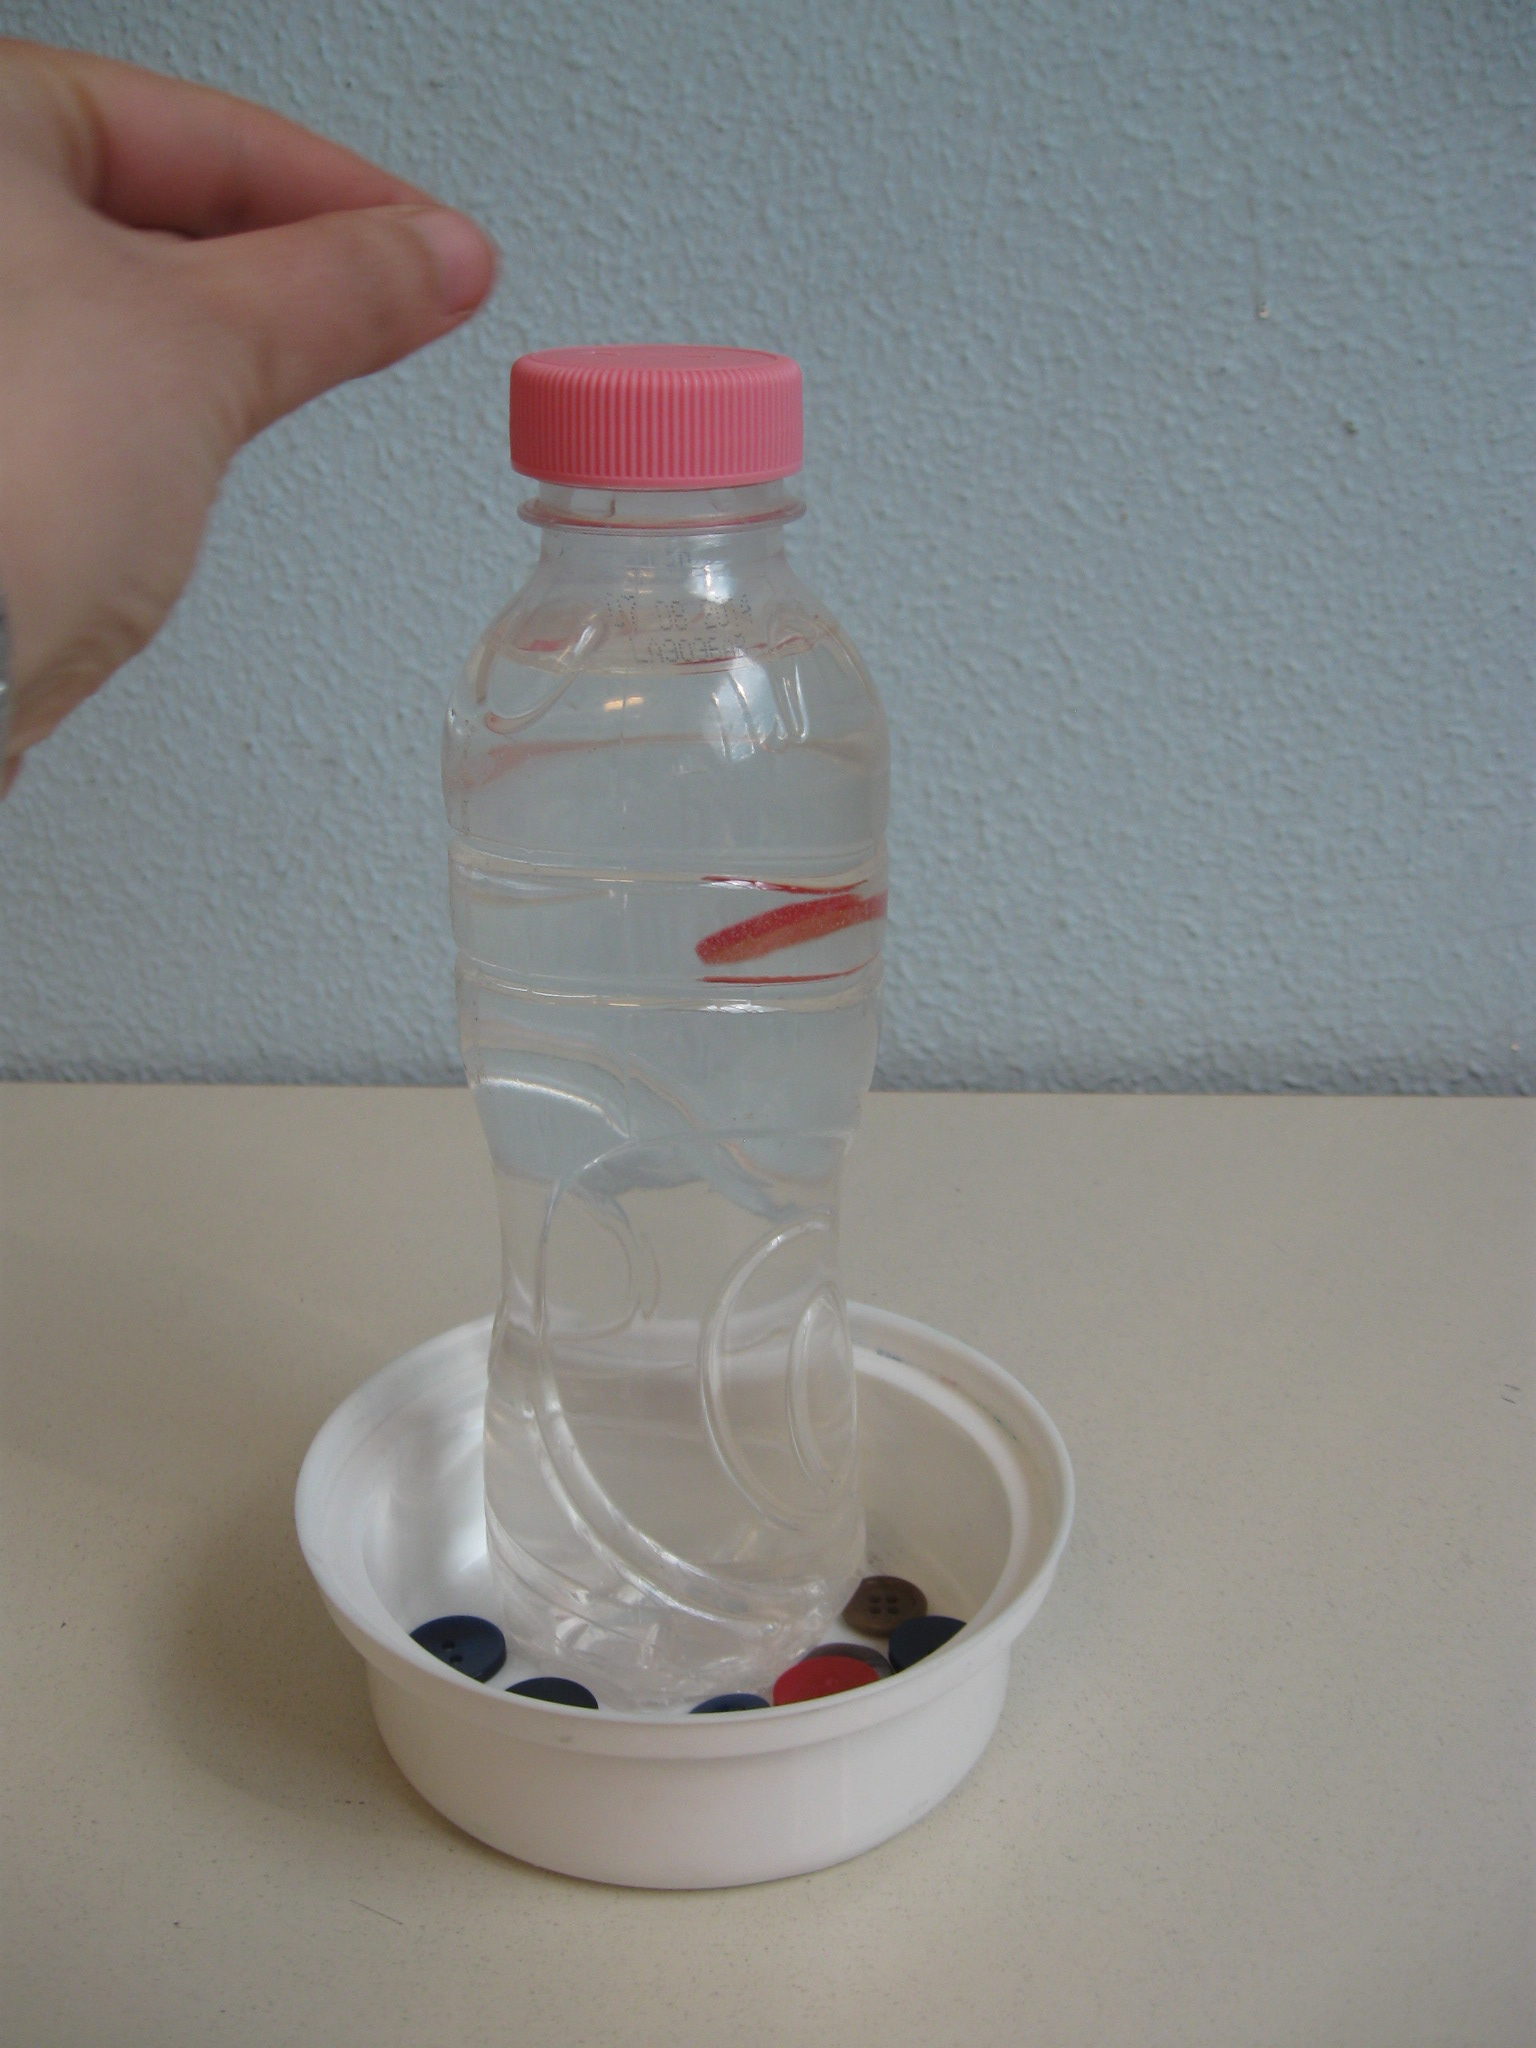 Una mano ha appena infilato un bottone nella fessura del tappo di una bottiglia: il bottono cade lentamente nell'acqua contenuta nella bottiglia.